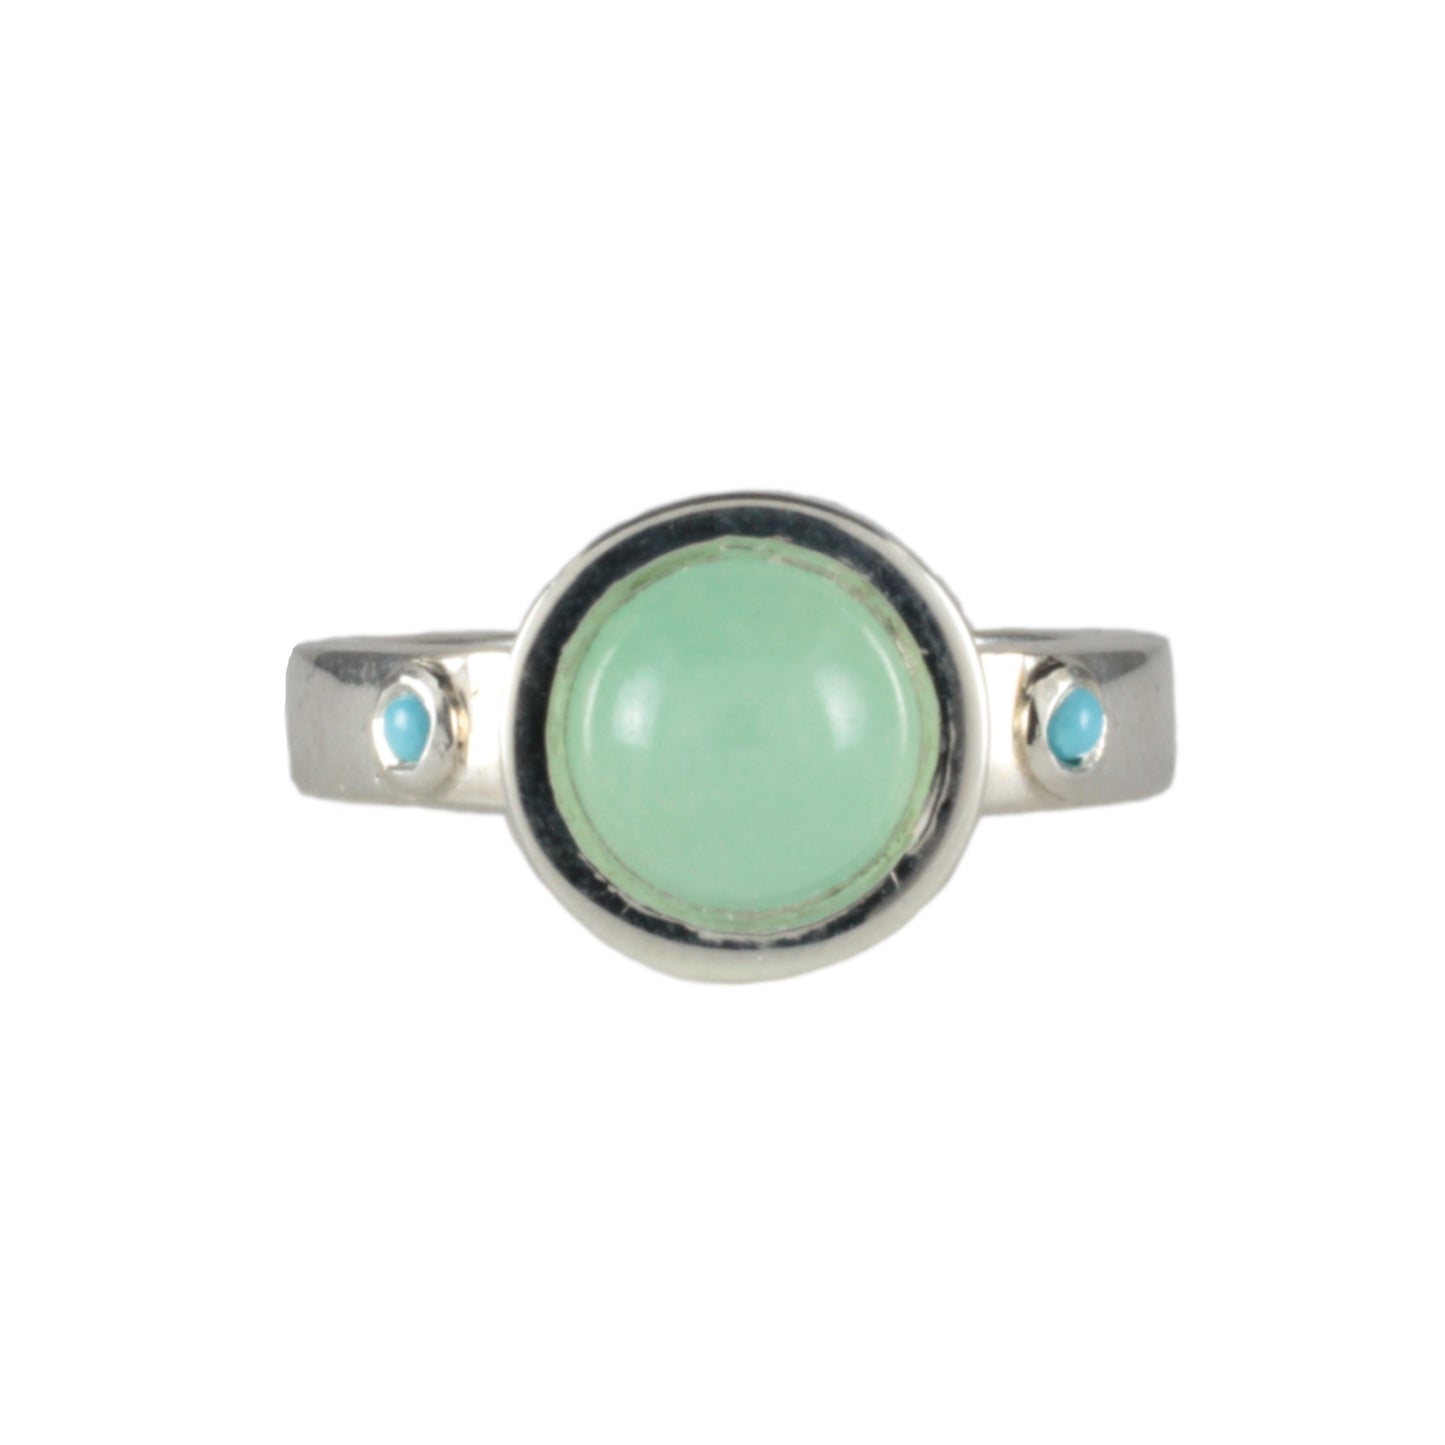 'Oston' Chrysoprase & Turquoise Medieval style ring